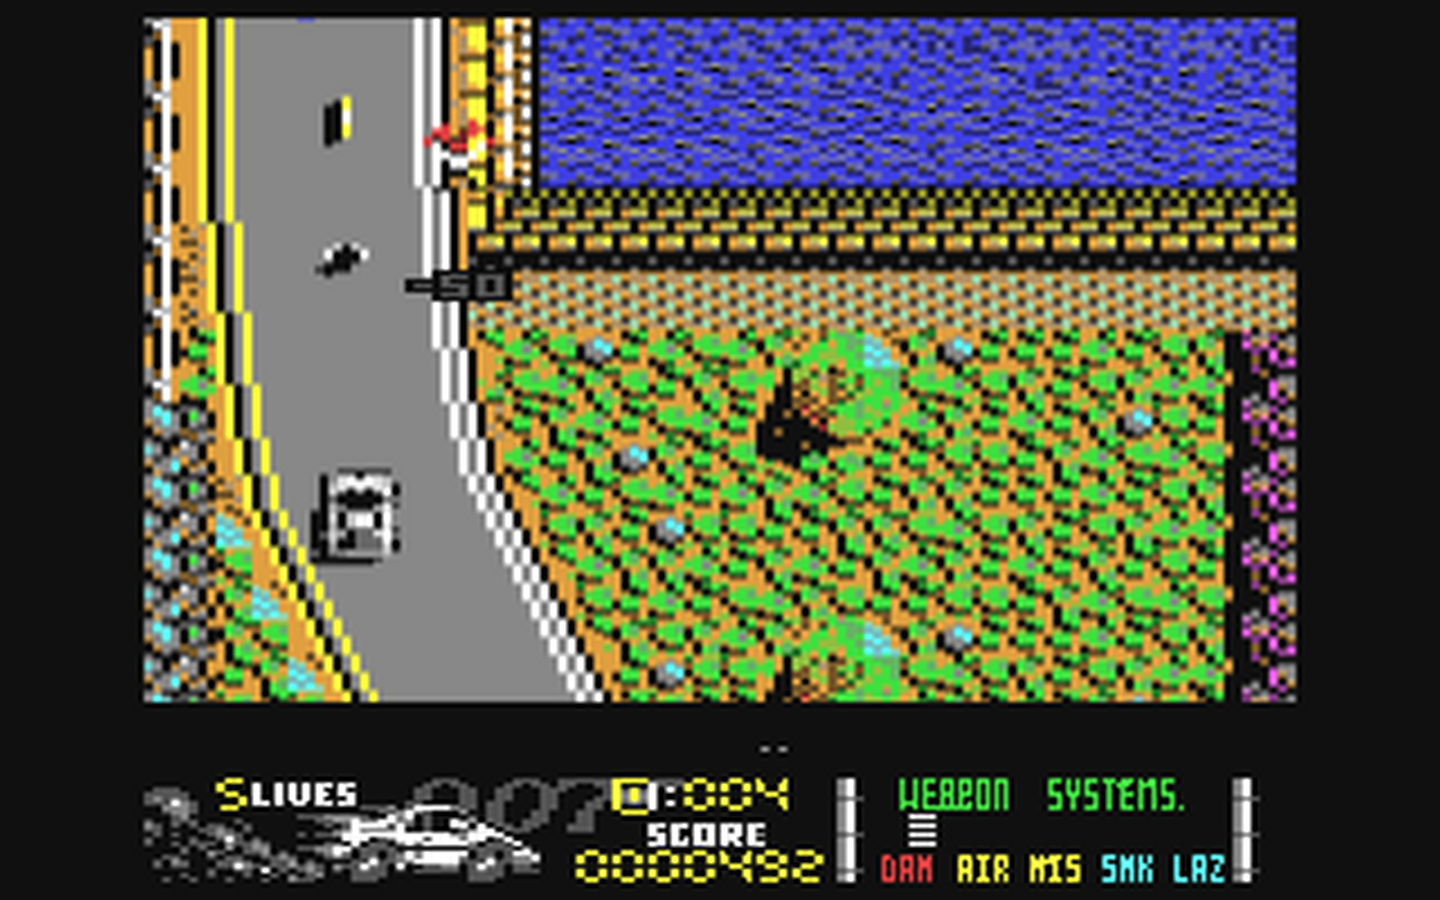 C64 GameBase Spy_Who_Loved_Me,_The Domark 1990